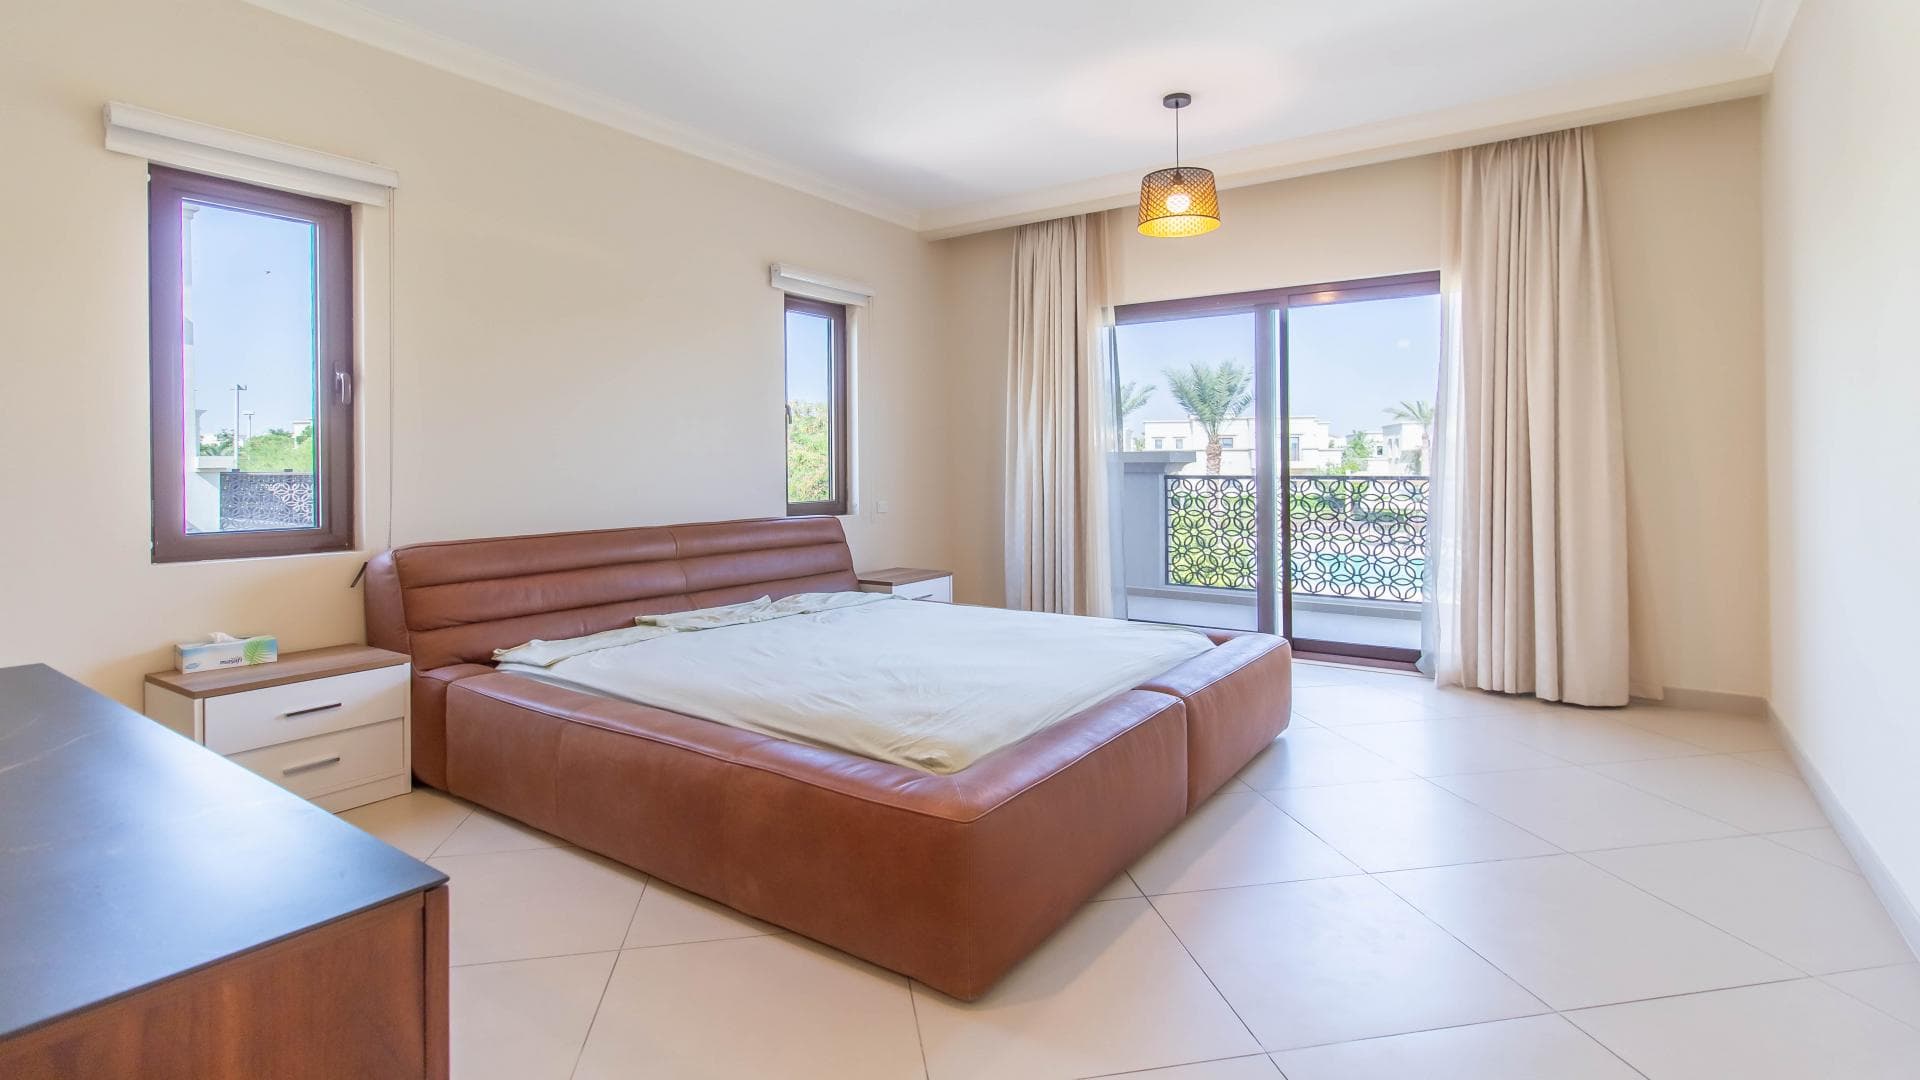 5 Bedroom Villa For Rent Al Bateen Residence Lp27831 1a20ff0bbdbf9900.jpg